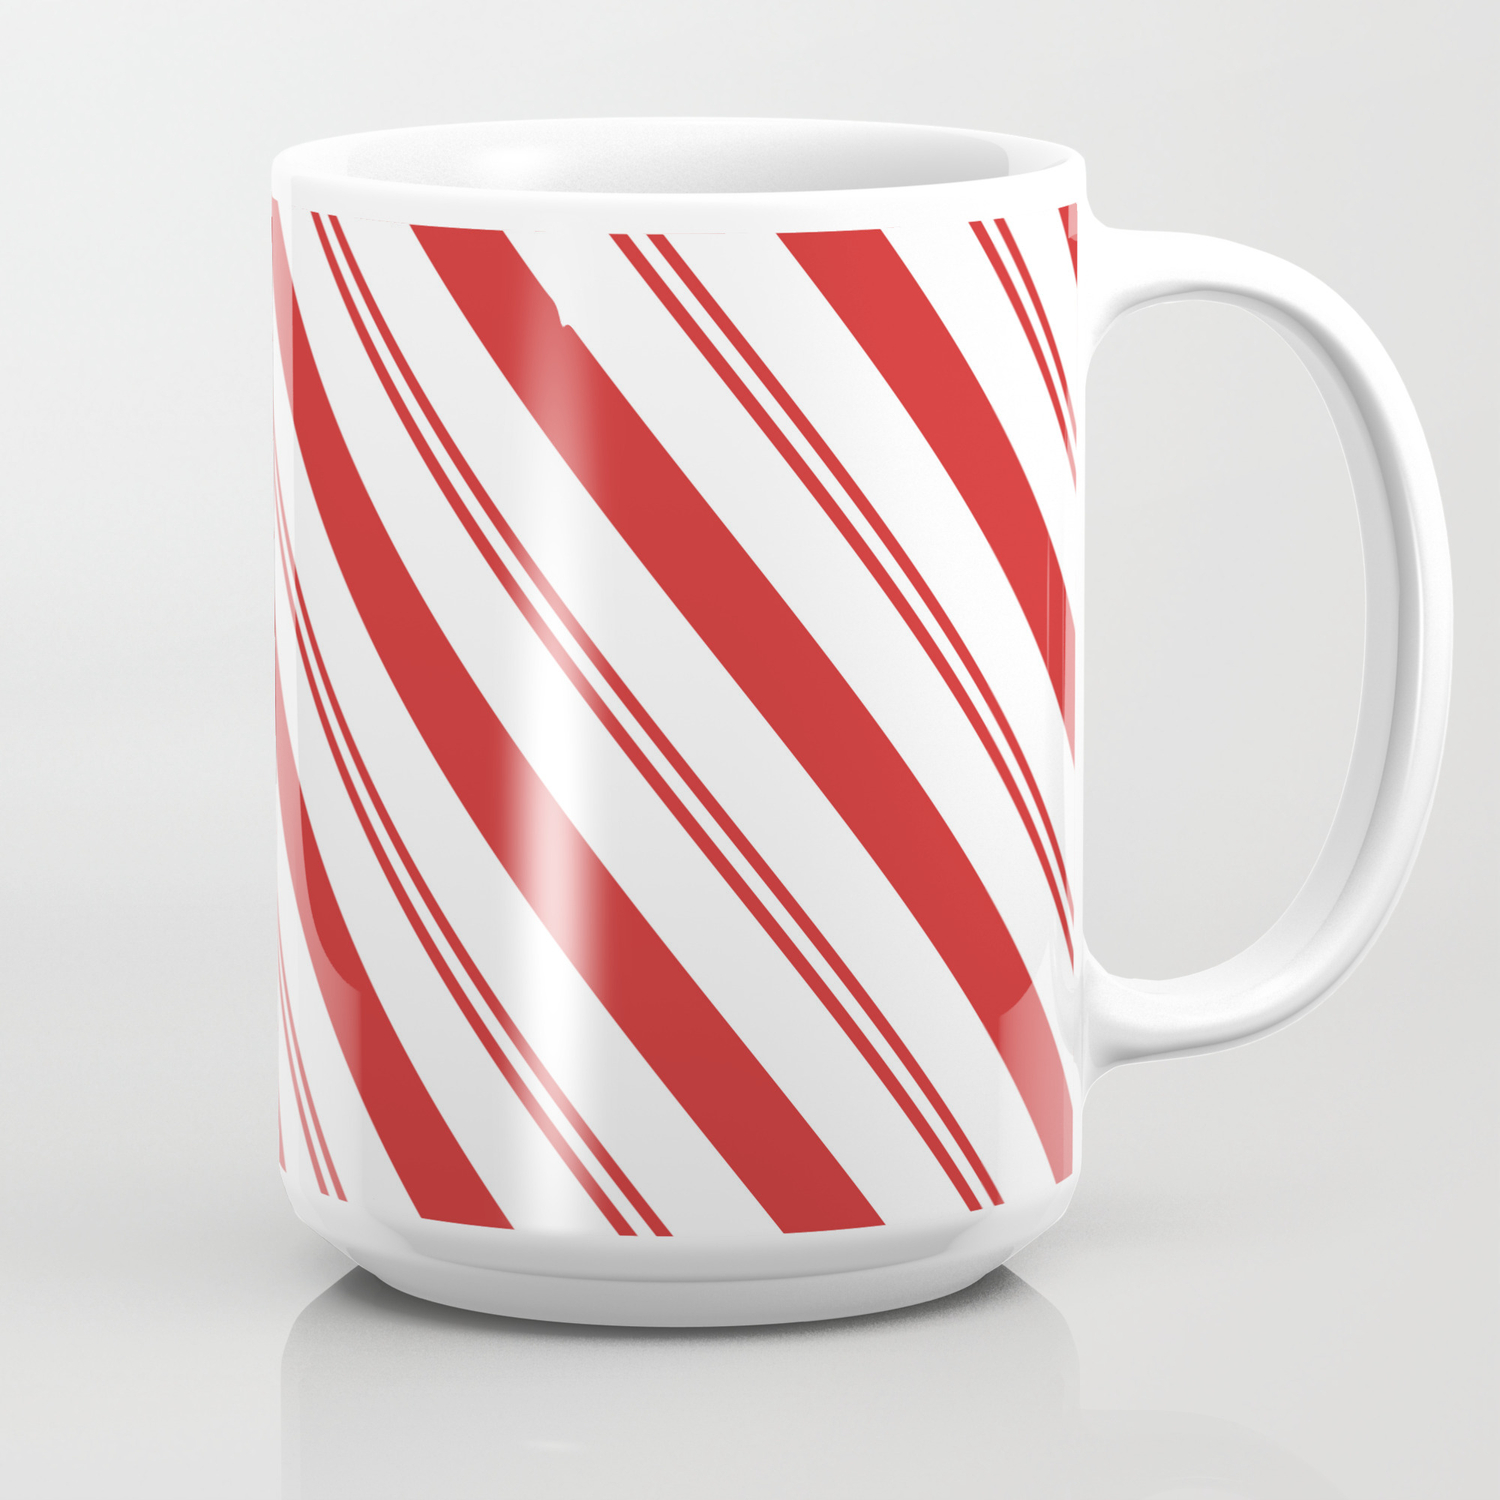 HOME Candy Cane Striped Coffee Mug Ceramic Christmas 